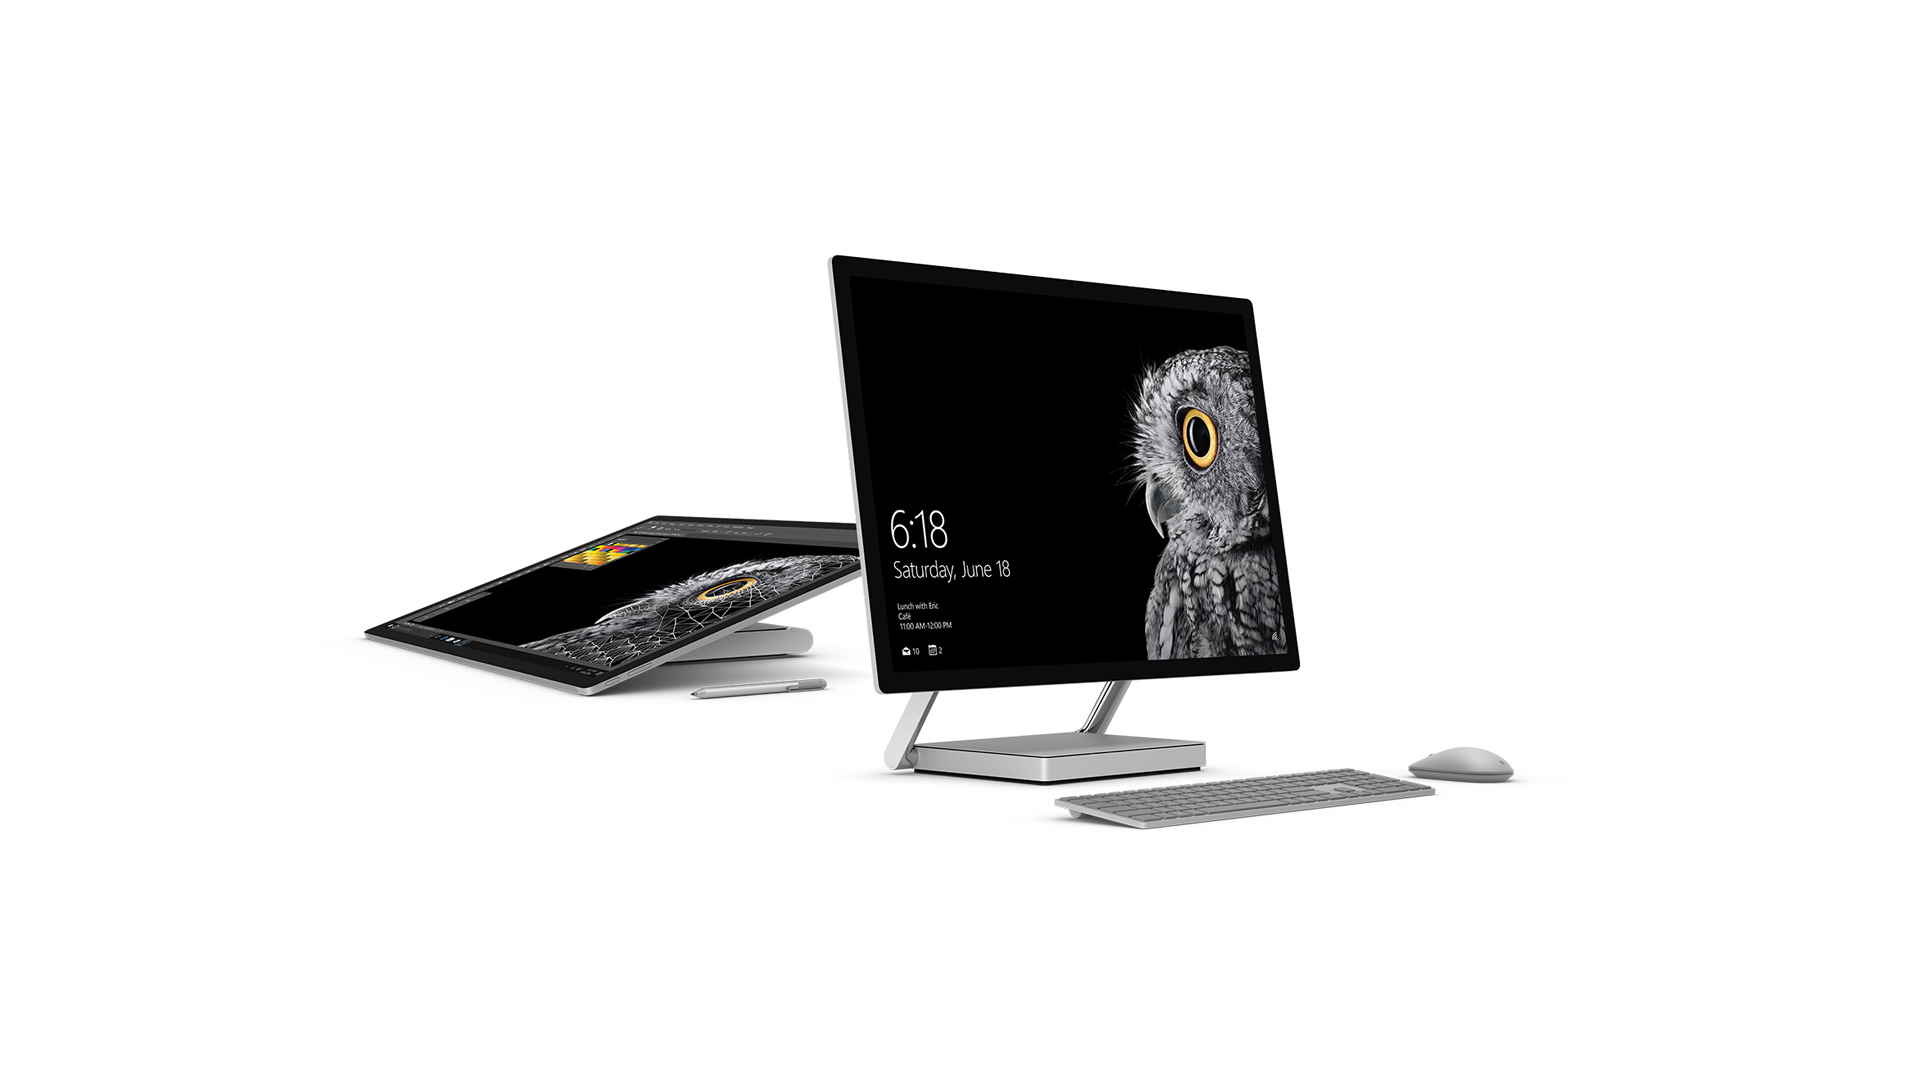 La firma estadounidense lanzó su nueva computadora la cual destaca por su pantalla LCD táctil ultra fina de 28 pulgadas